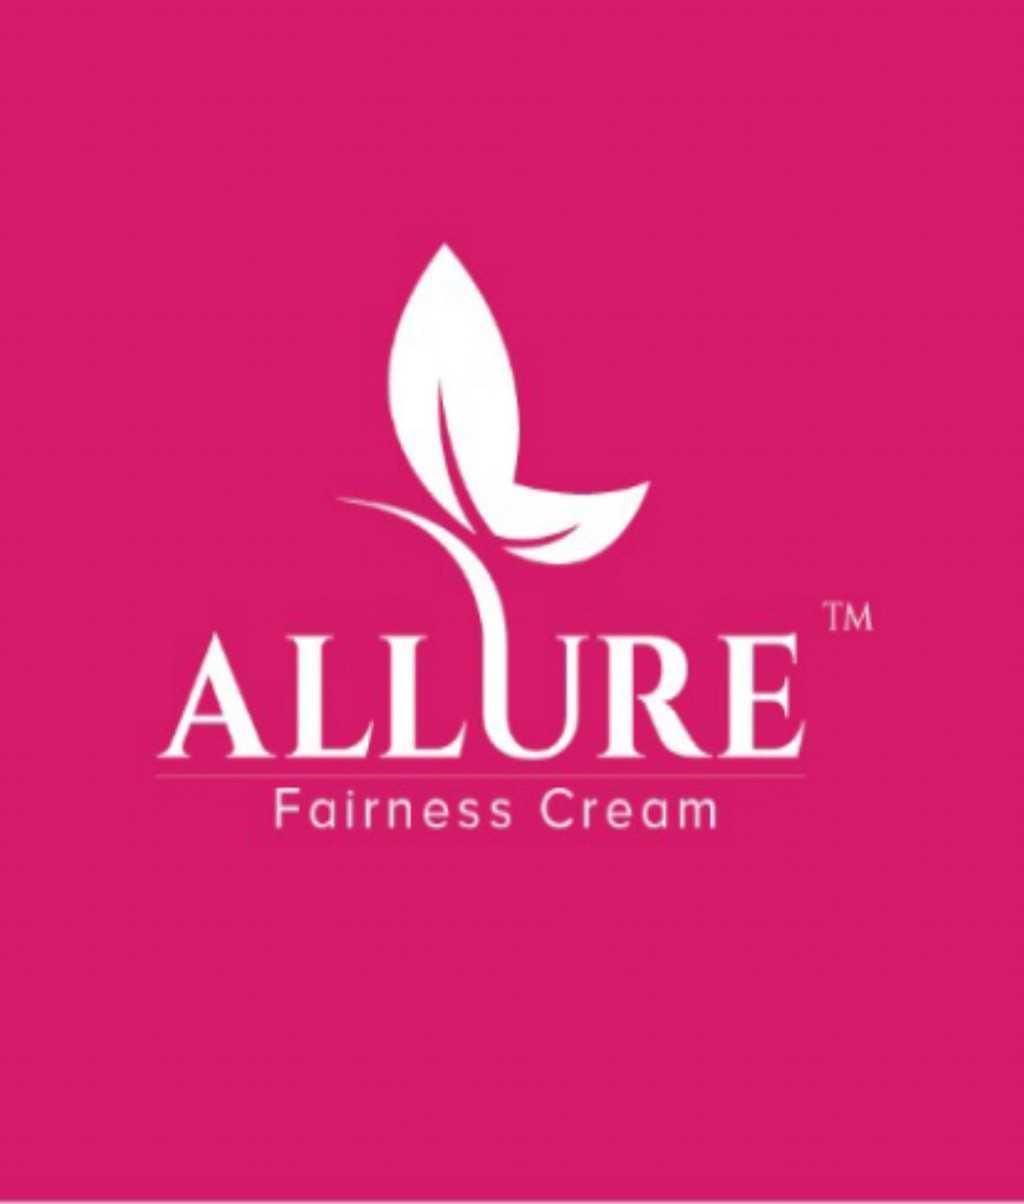 Allure Fairness Cream